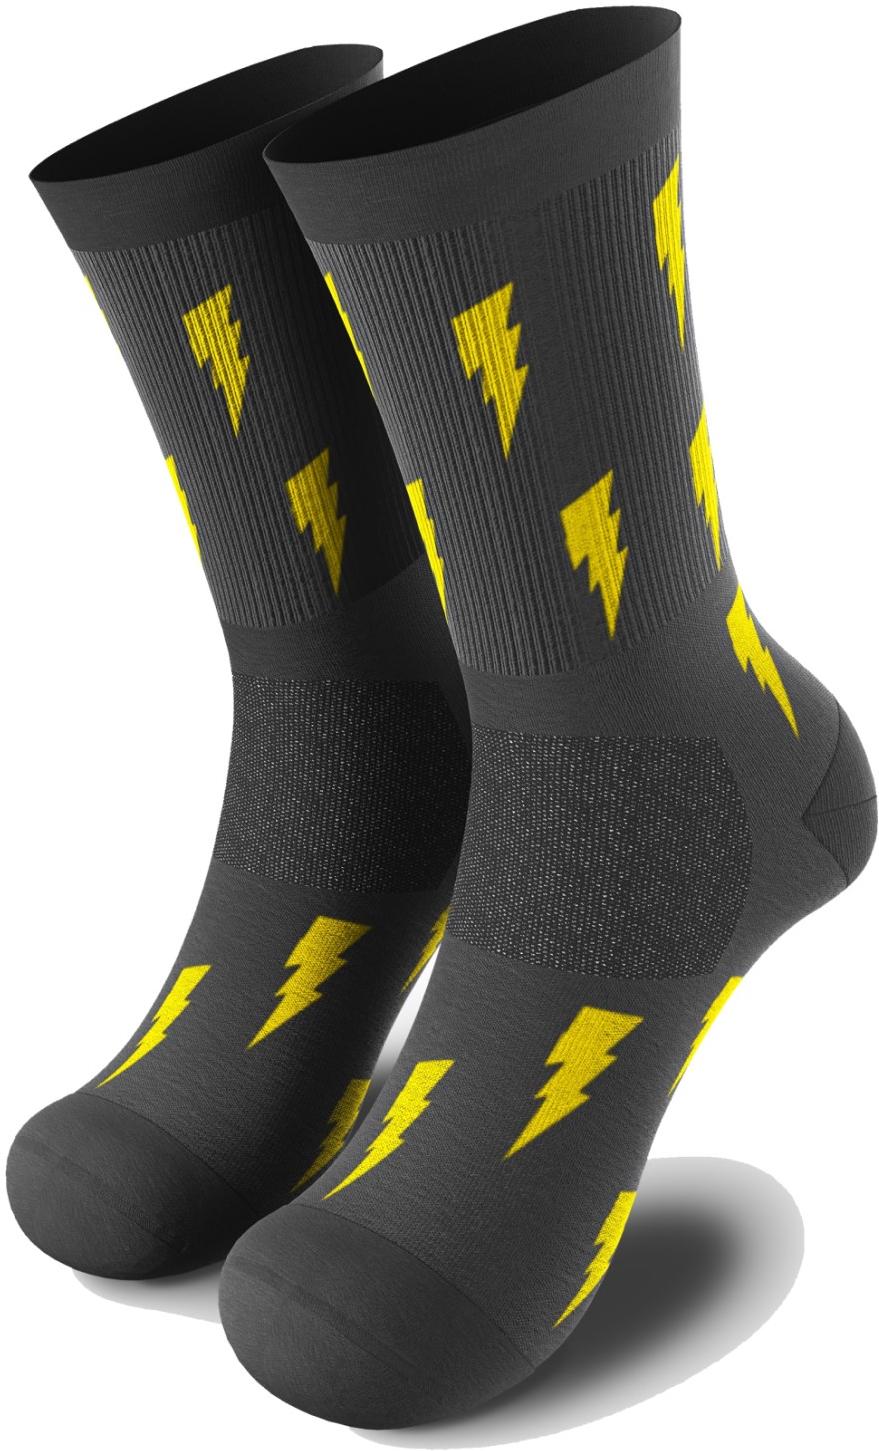 HappyTraining Flash Socks